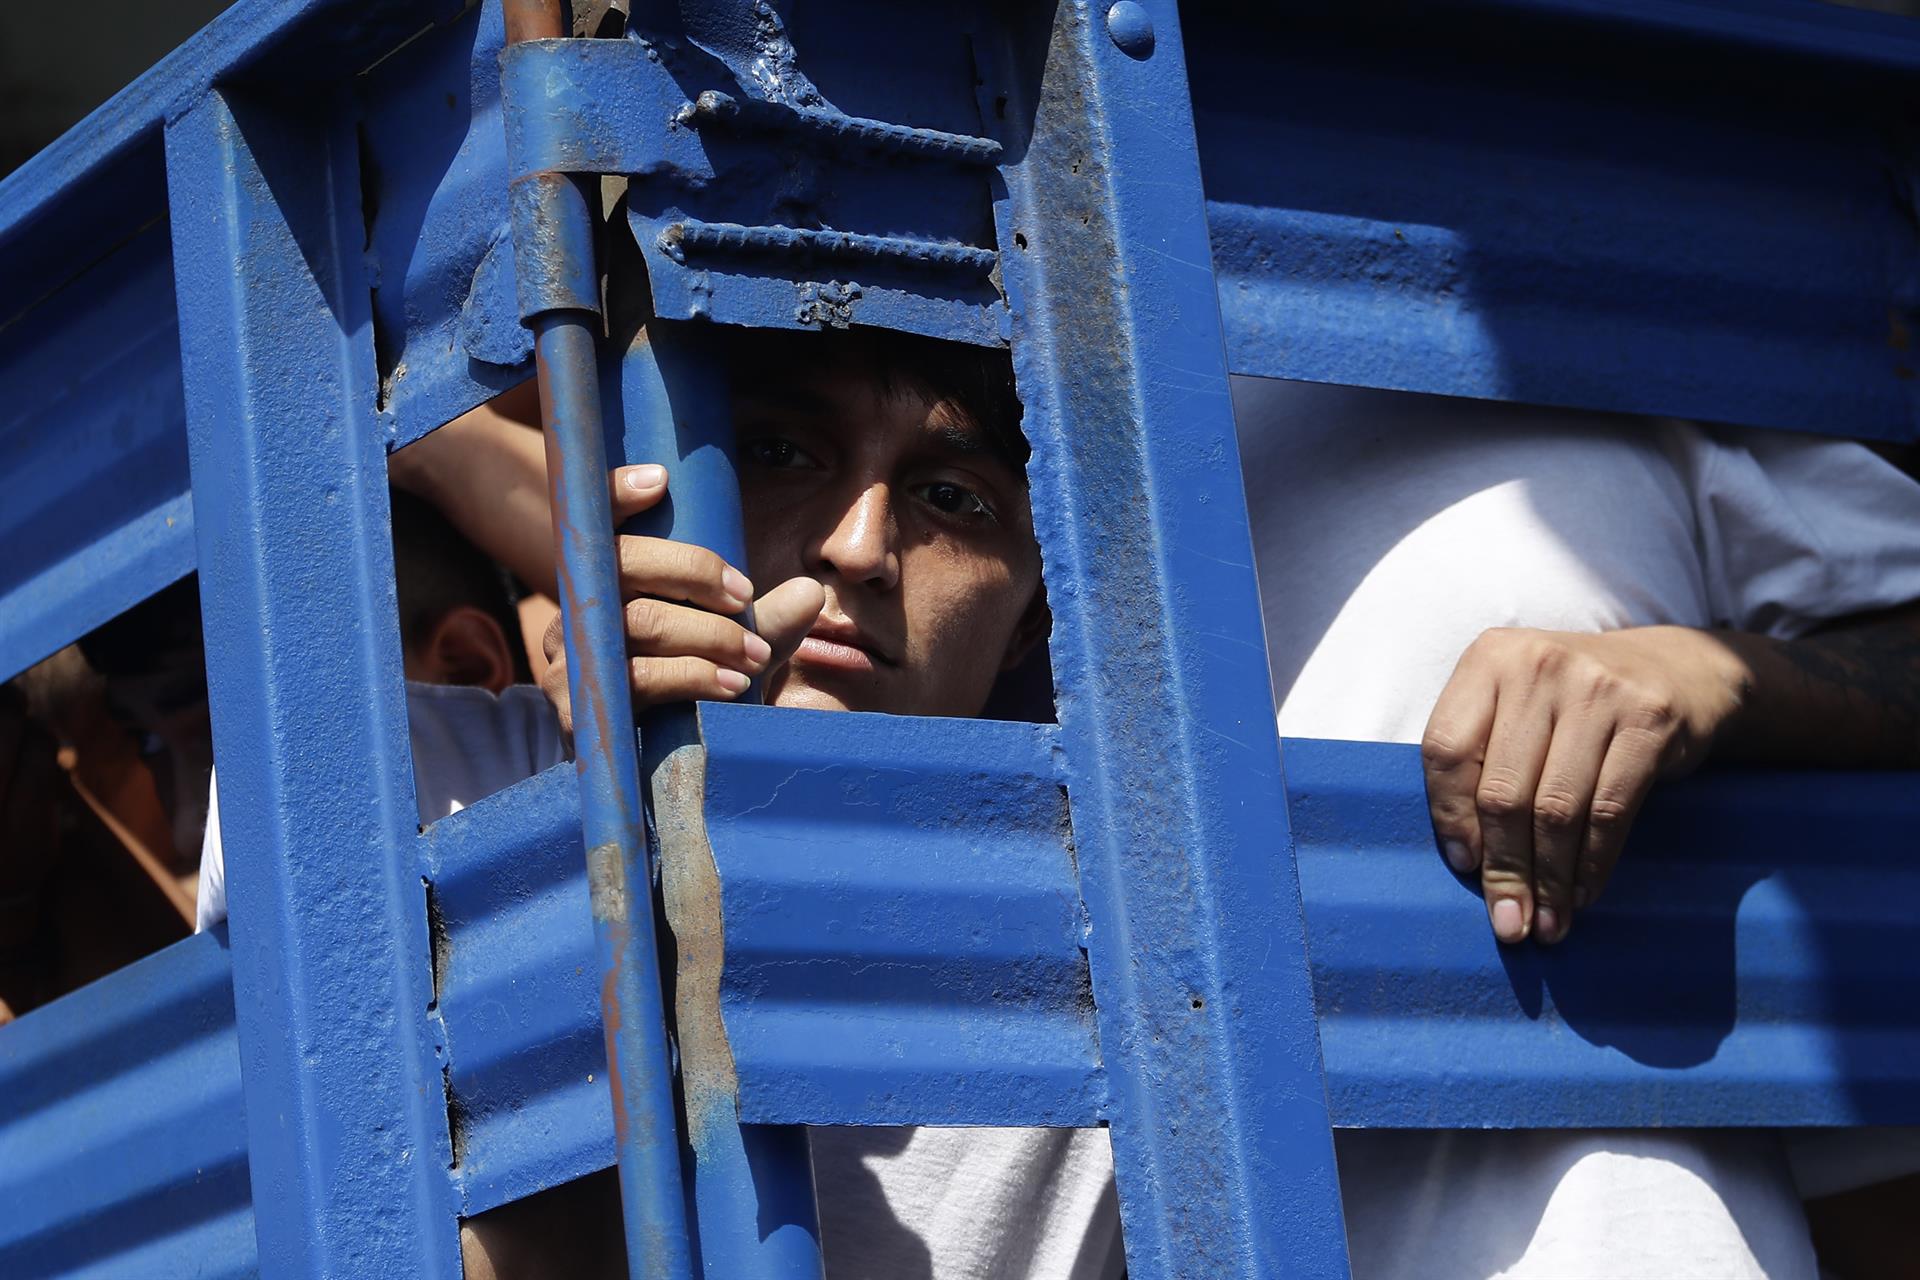 Más de 8,000 pandilleros capturados en El Salvador, según Bukele